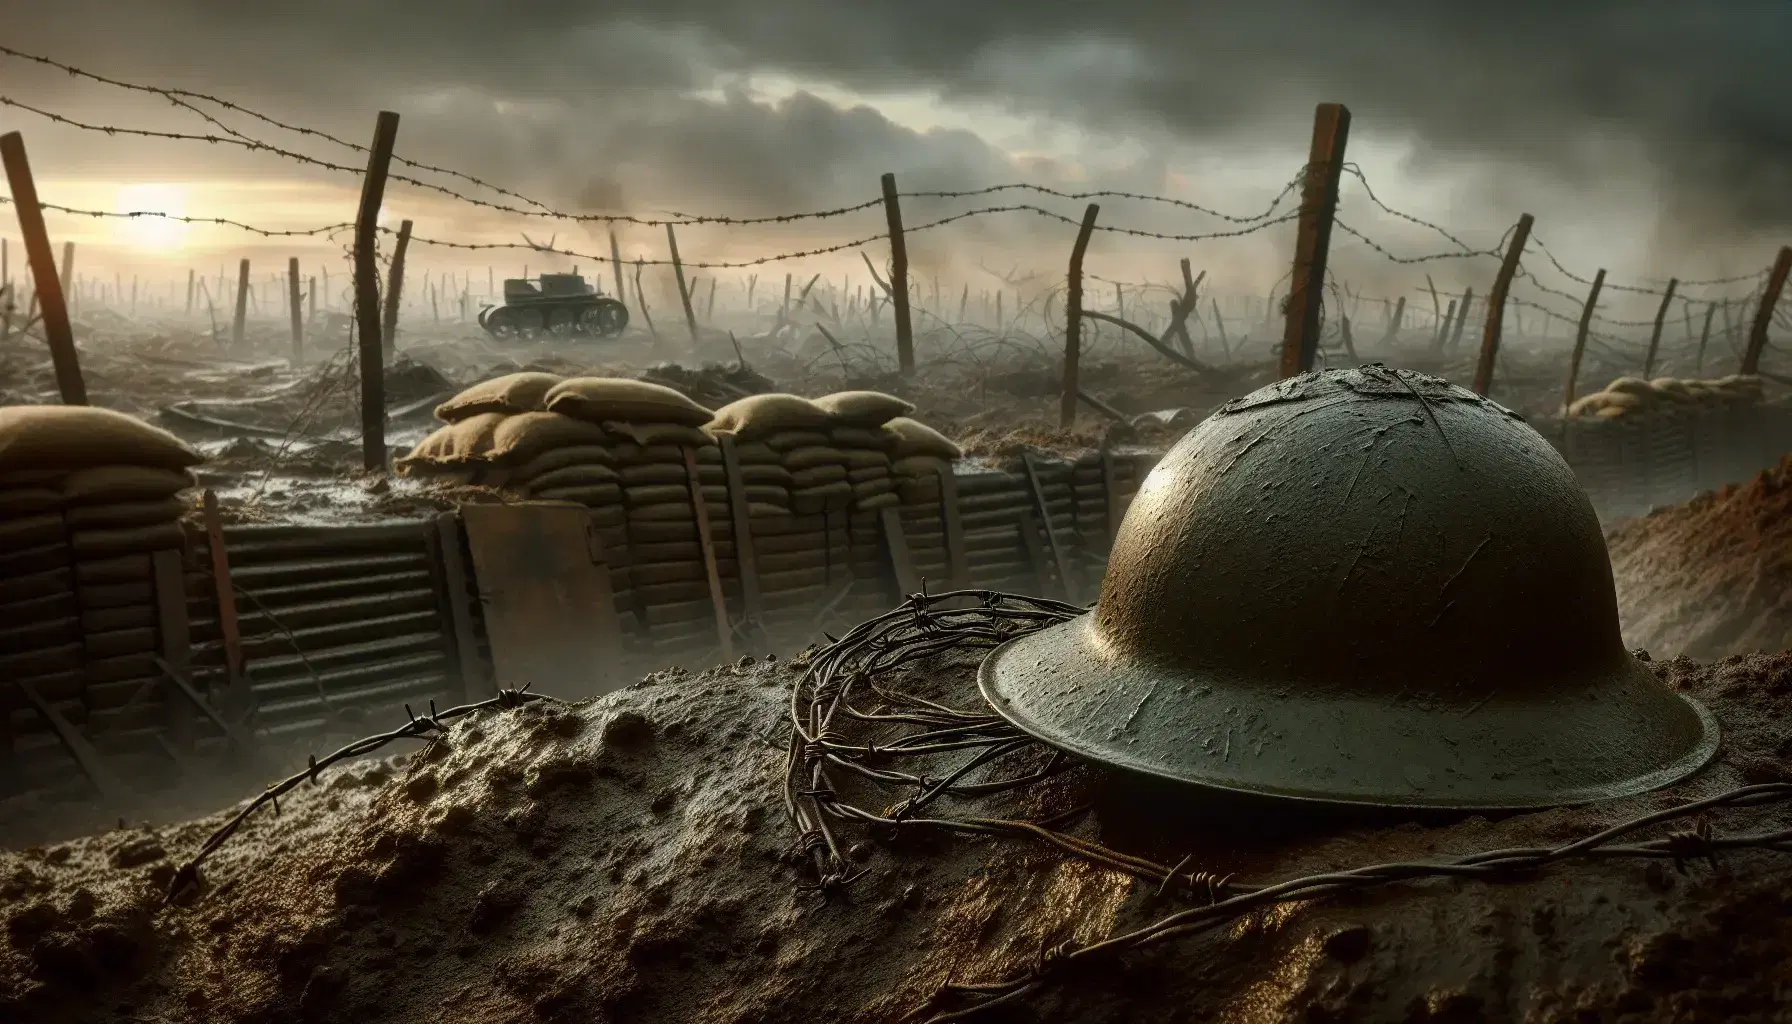 Casco militar de la Primera Guerra Mundial abollado y sucio en un campo de batalla con alambre de púas y trincheras bajo un cielo nublado al amanecer o atardecer.